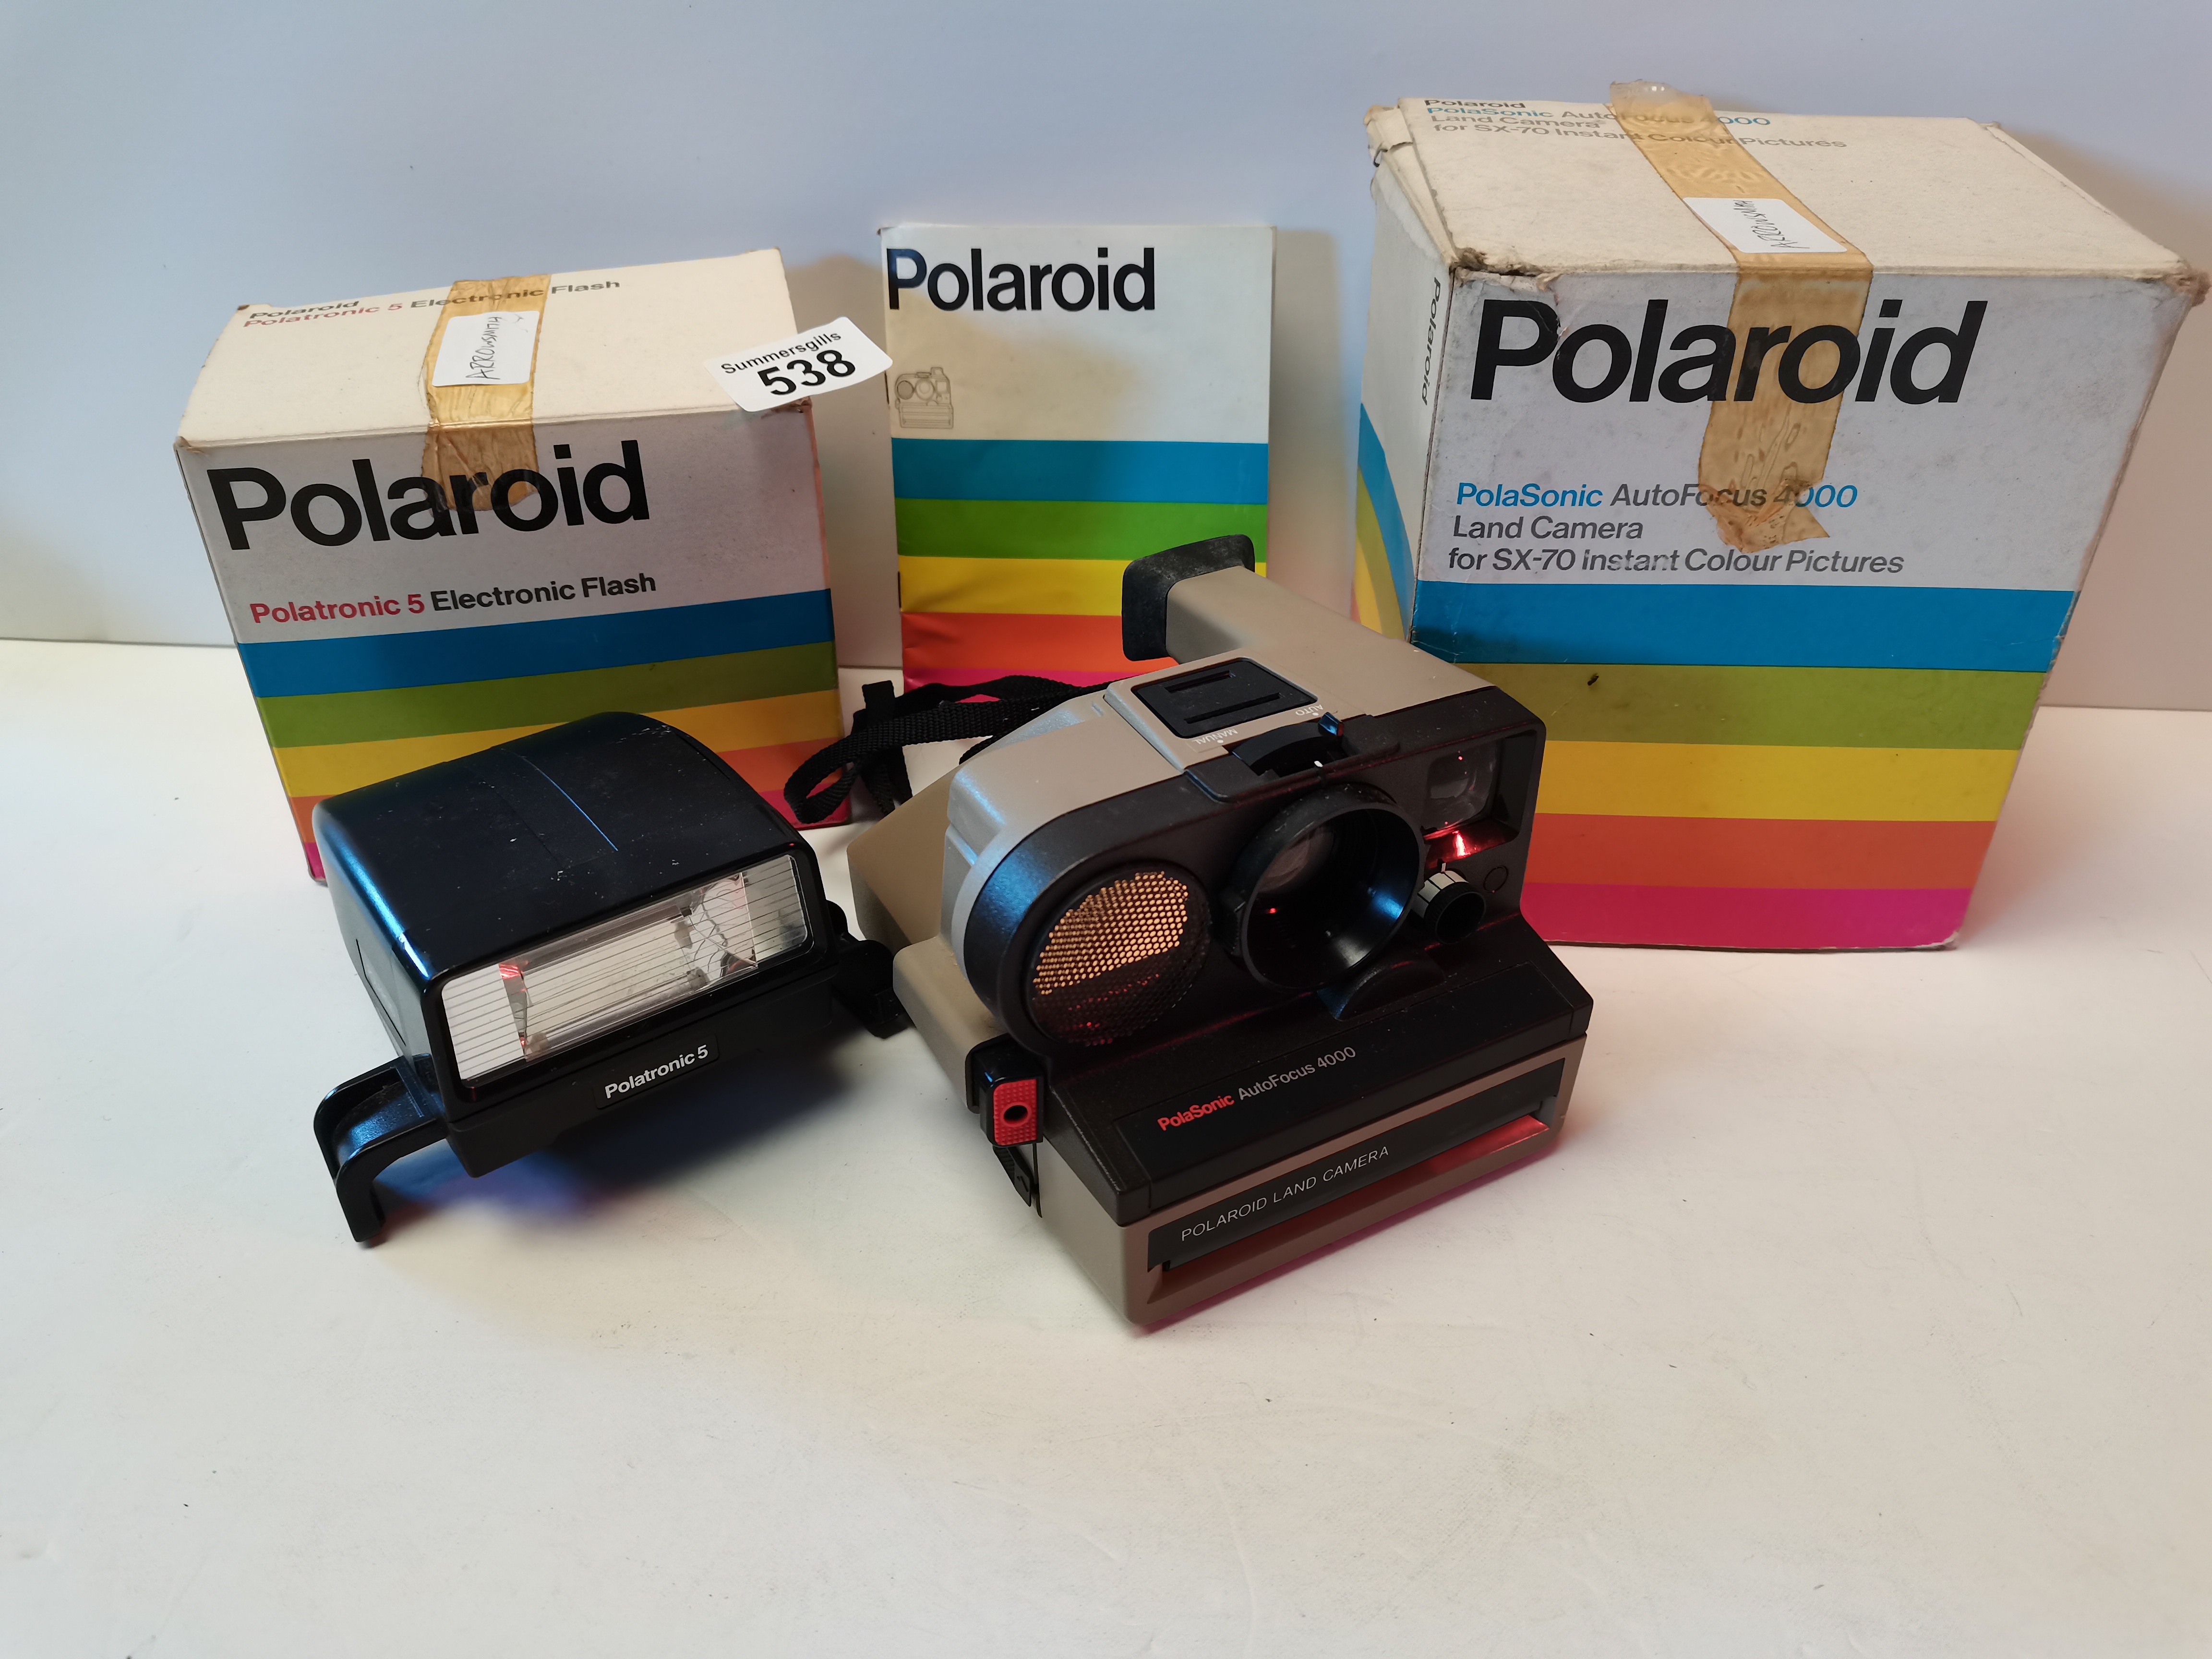 Polaroid PolaSonic AutoFocus 4000 Land Camera for SX-70, Polaroid Polatronic 5 Electronic Flash